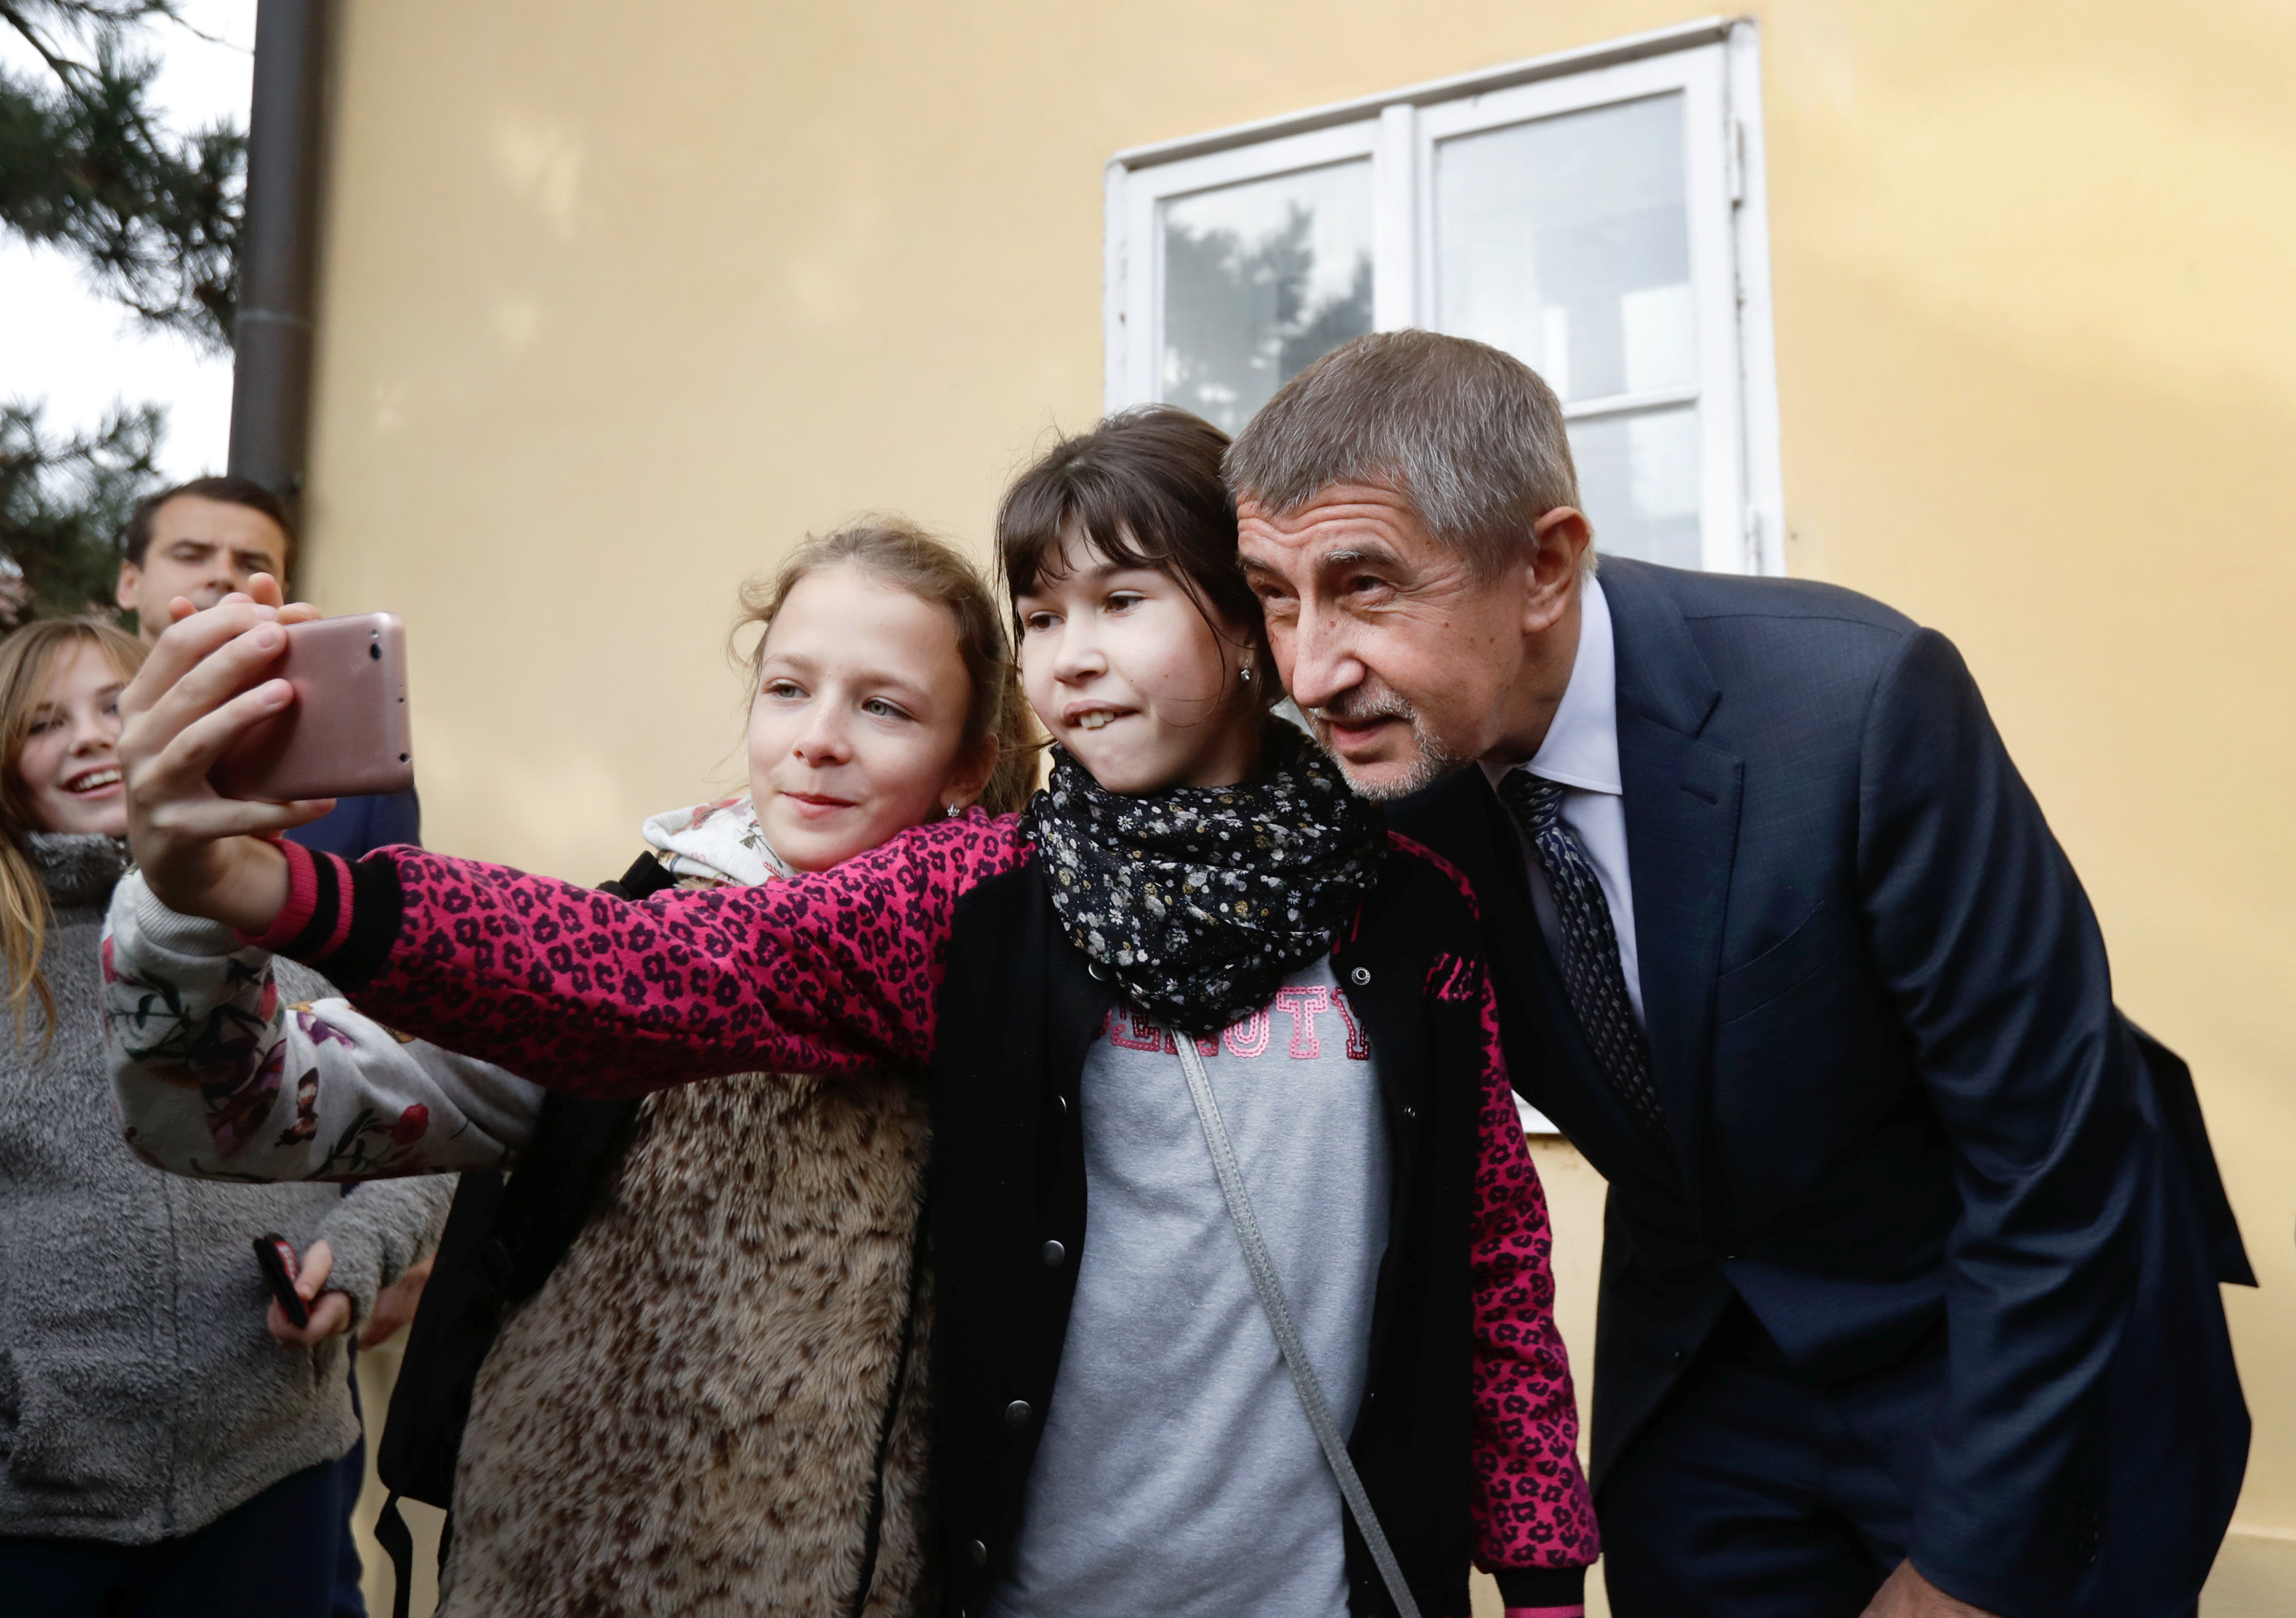 زعيم حزب انو التشيكى يلتقط صورة سيلفى مع طفلتان